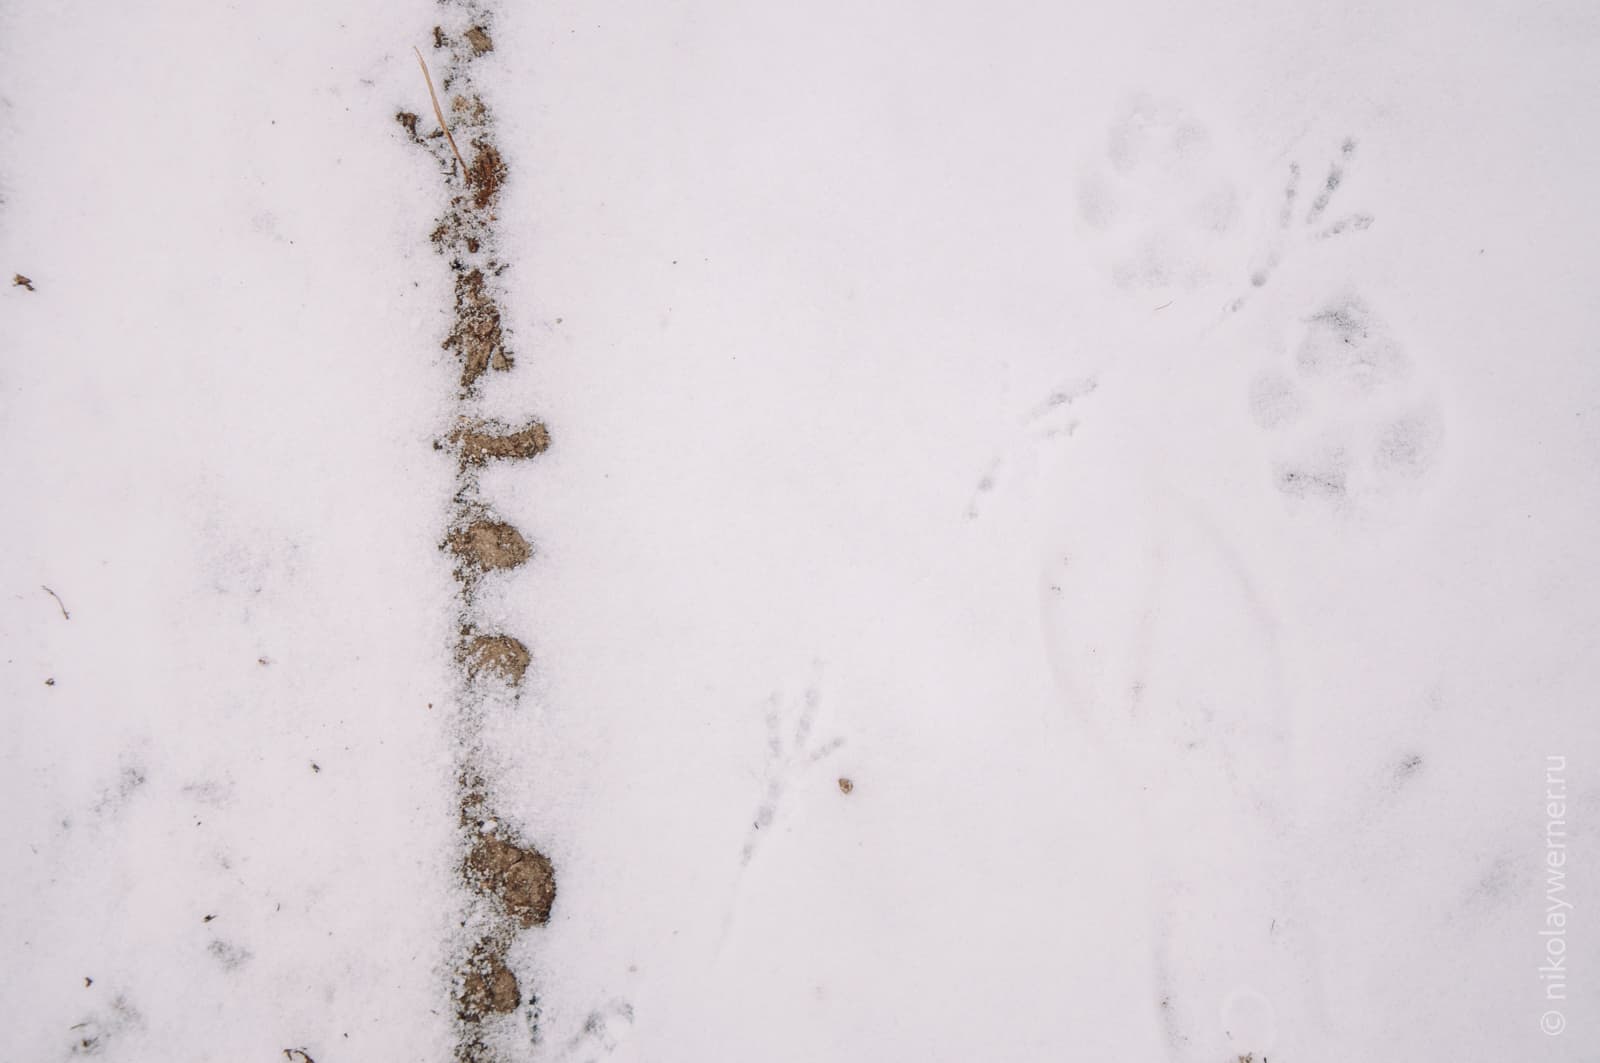 Снег под ногами, фото строго сверху вниз, по левой трети вертикально кадр разрезает тонкая полоска земли, на снегу следы птиц и собак.